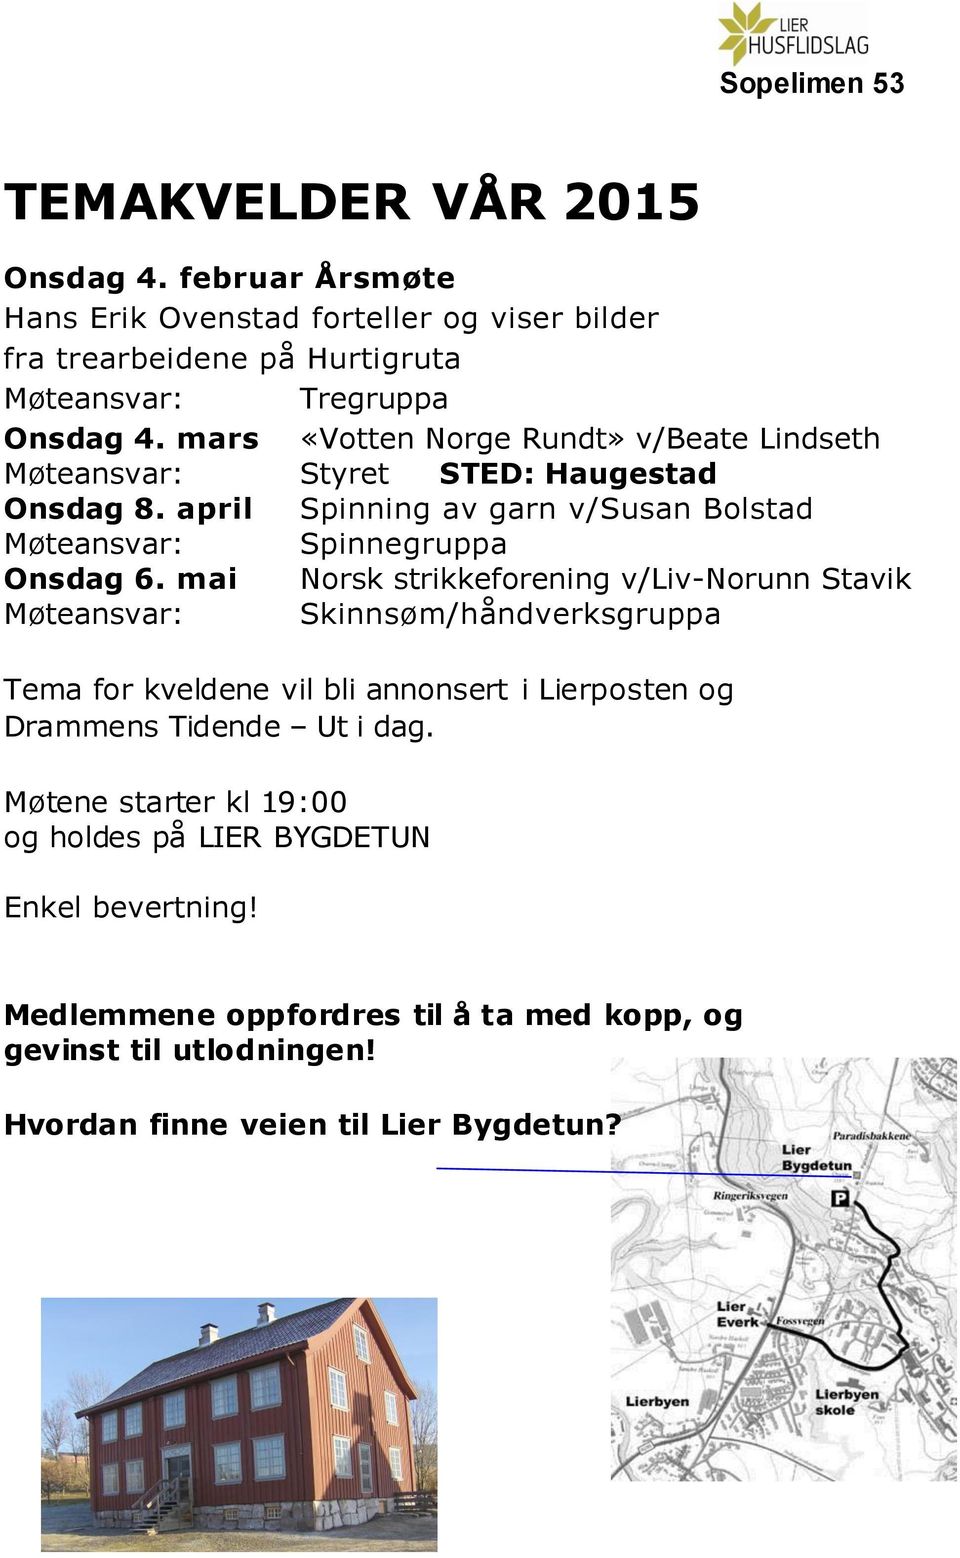 mai Norsk strikkeforening v/liv-norunn Stavik Møteansvar: Skinnsøm/håndverksgruppa Tema for kveldene vil bli annonsert i Lierposten og Drammens Tidende Ut i dag.